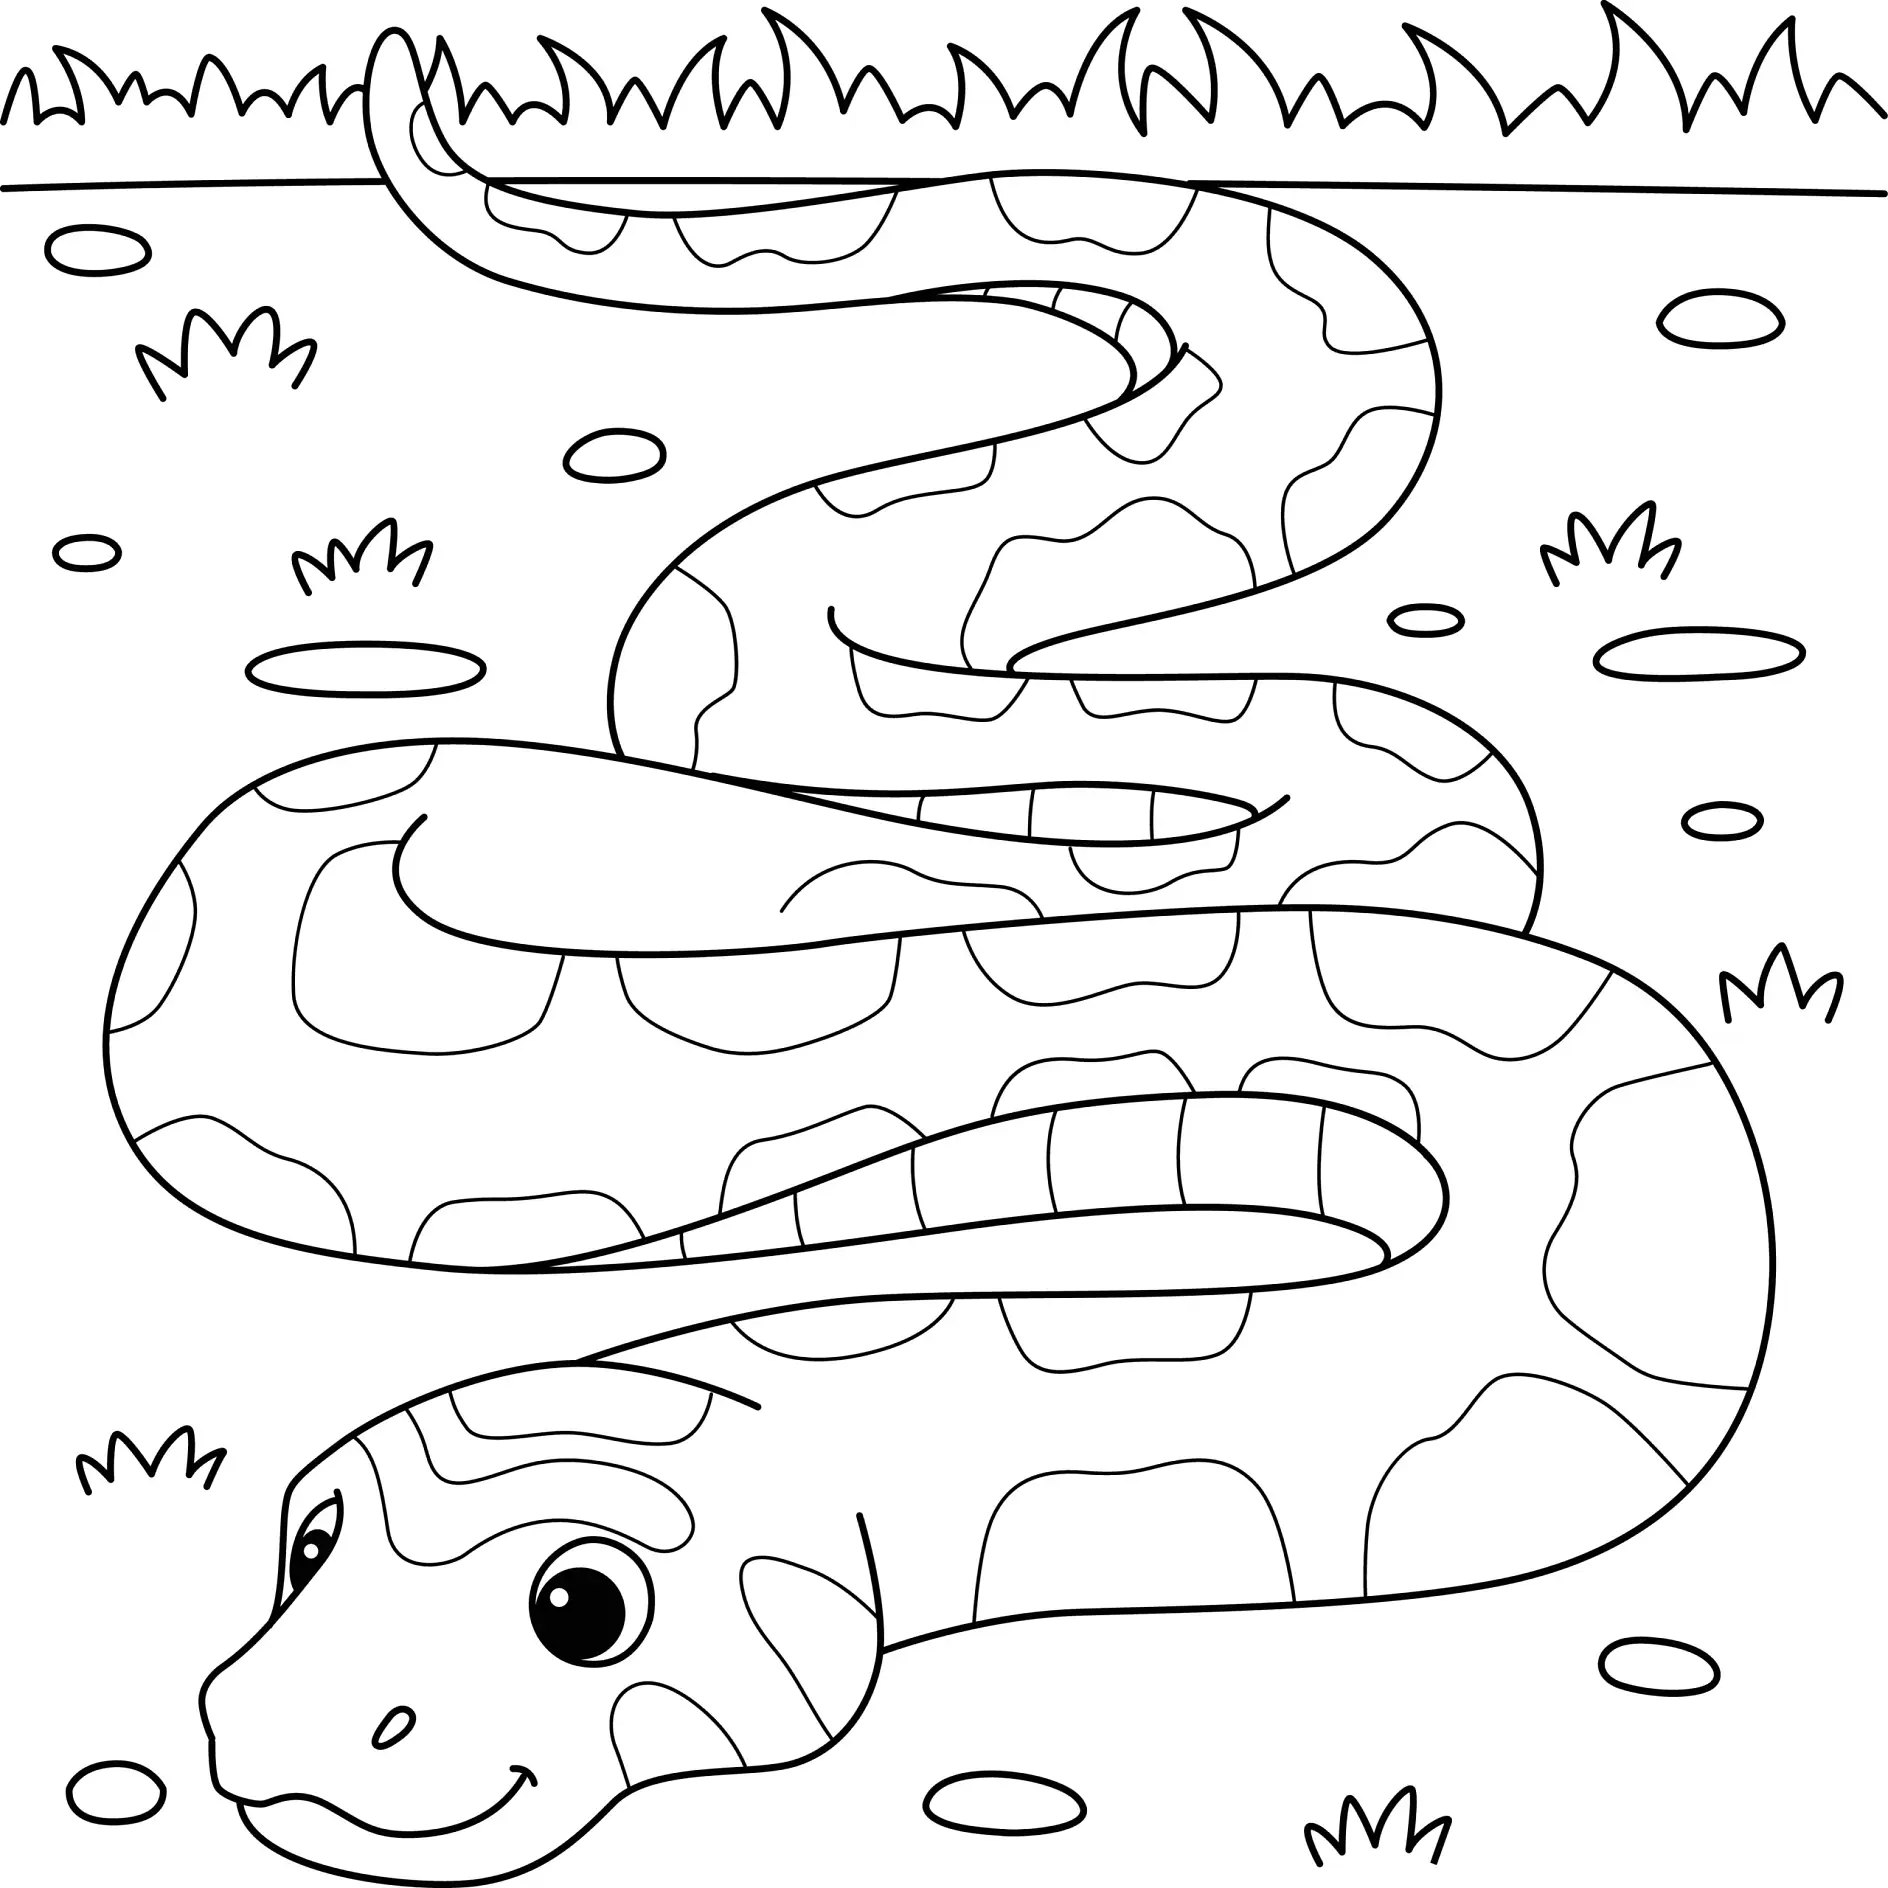 Ausmalbild Schlange mit Fleckenmuster auf Wiese